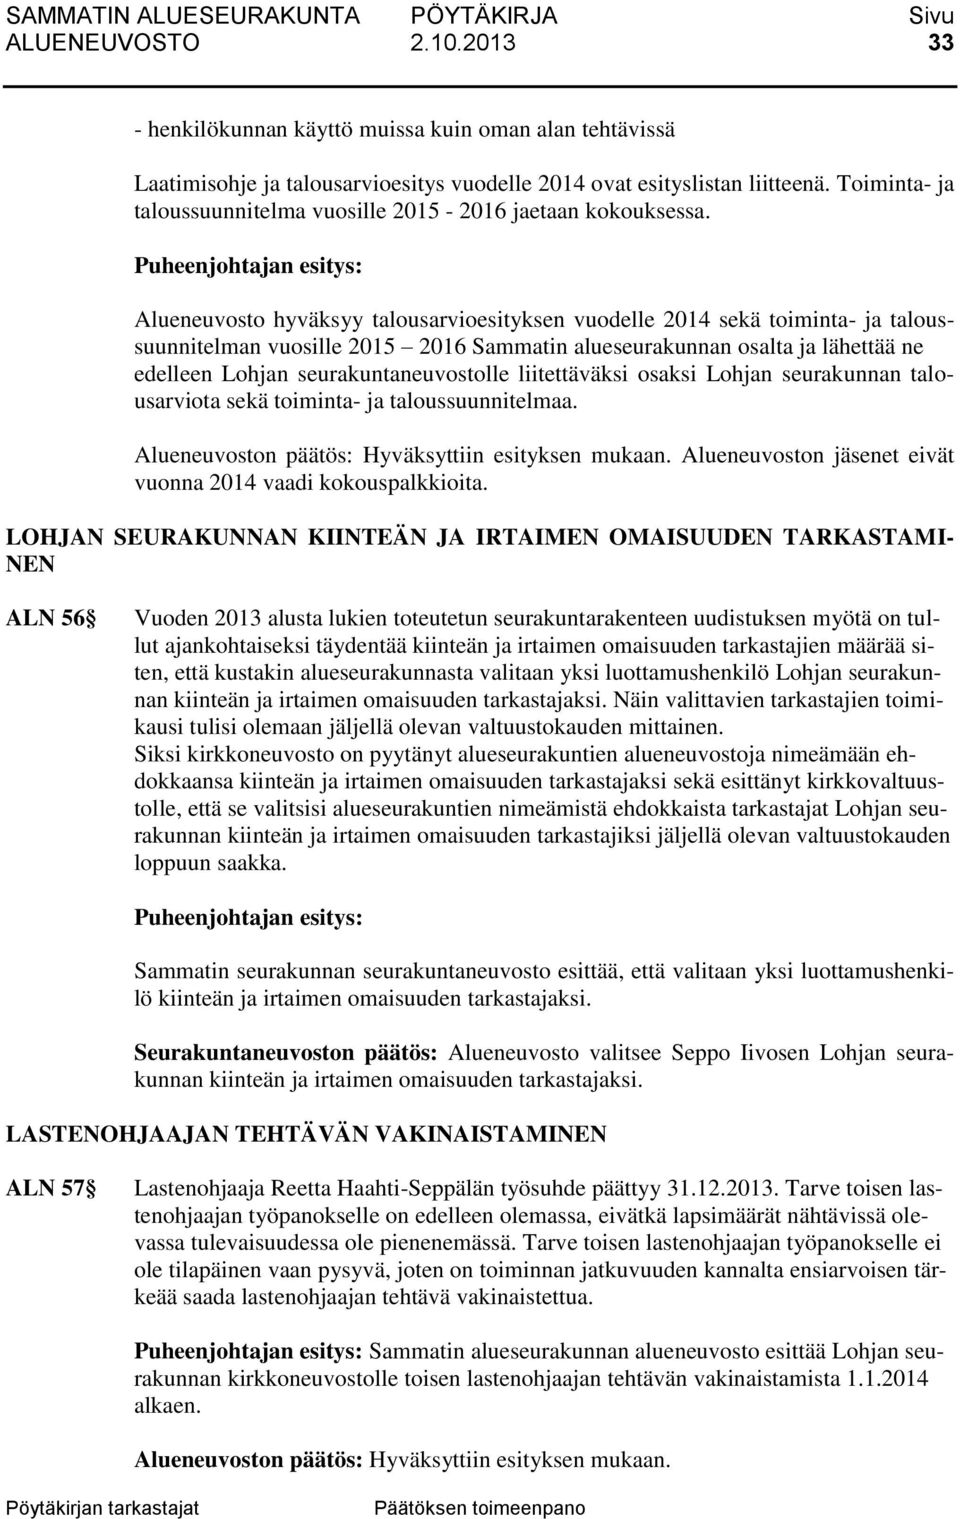 Alueneuvosto hyväksyy talousarvioesityksen vuodelle 2014 sekä toiminta- ja taloussuunnitelman vuosille 2015 2016 Sammatin alueseurakunnan osalta ja lähettää ne edelleen Lohjan seurakuntaneuvostolle